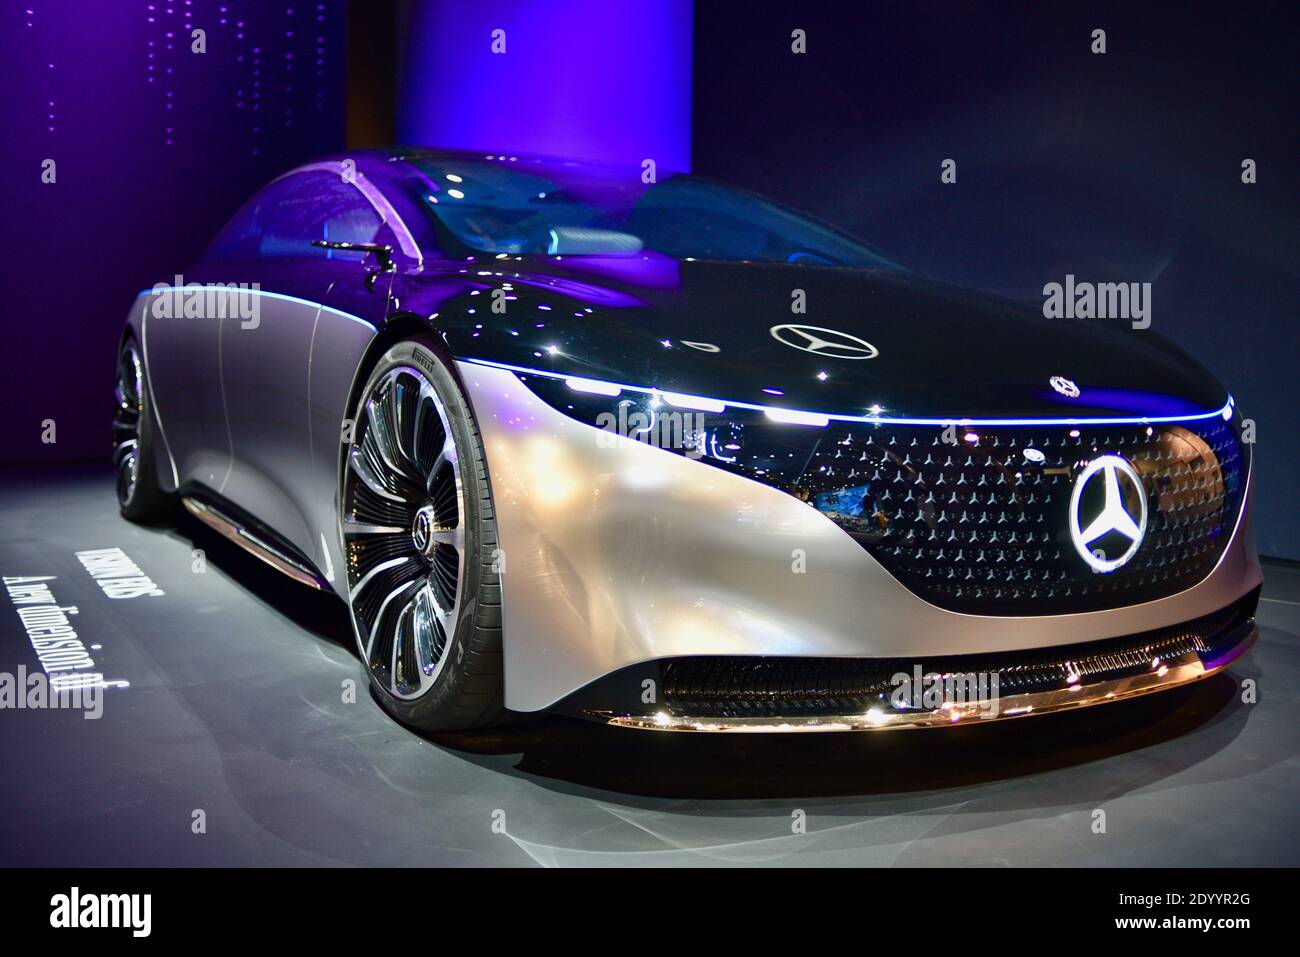 Vollelektrisches Fahrzeug Mercedes Benz Vision EQS auf der CES weltweit  größte Messe Las Vegas, NV, USA Stockfotografie - Alamy